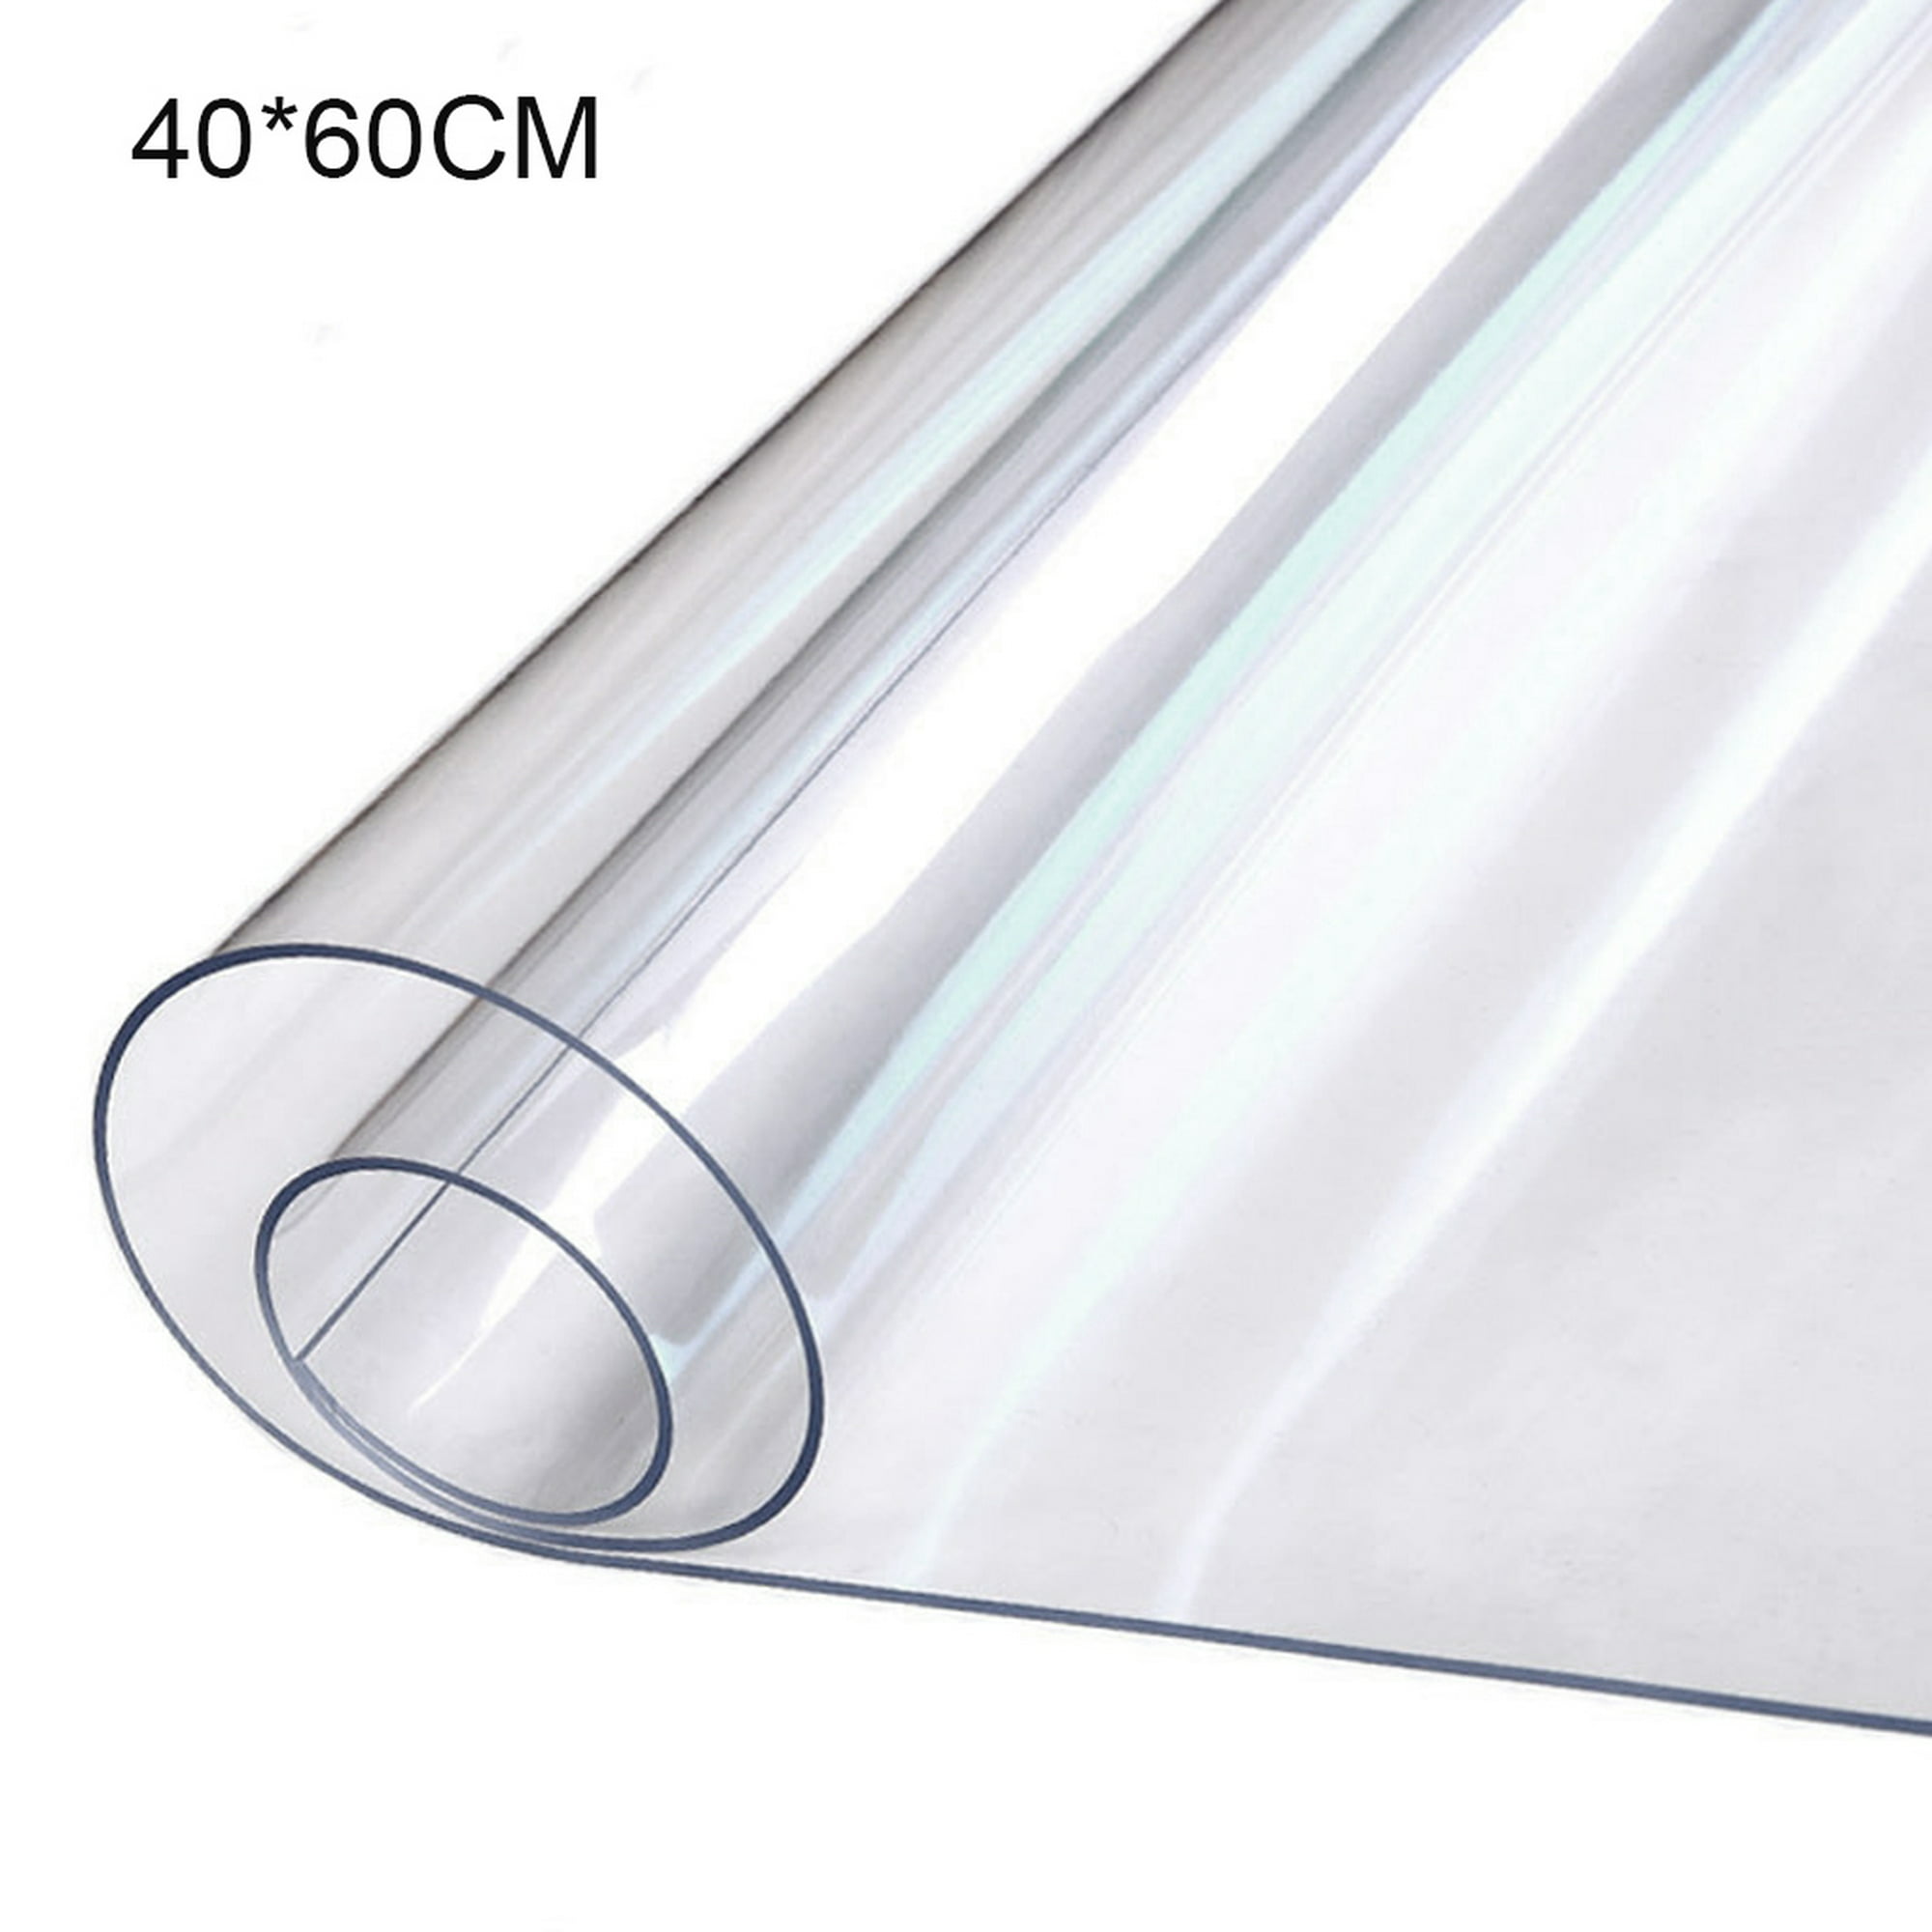  Mantel de hule de vinilo de PVC, protector de mesa resistente a  las manchas, cubierta de mesa de PVC, mantel de plástico transparente de  1/0.059 in de espesor, alfombrilla rectangular (color